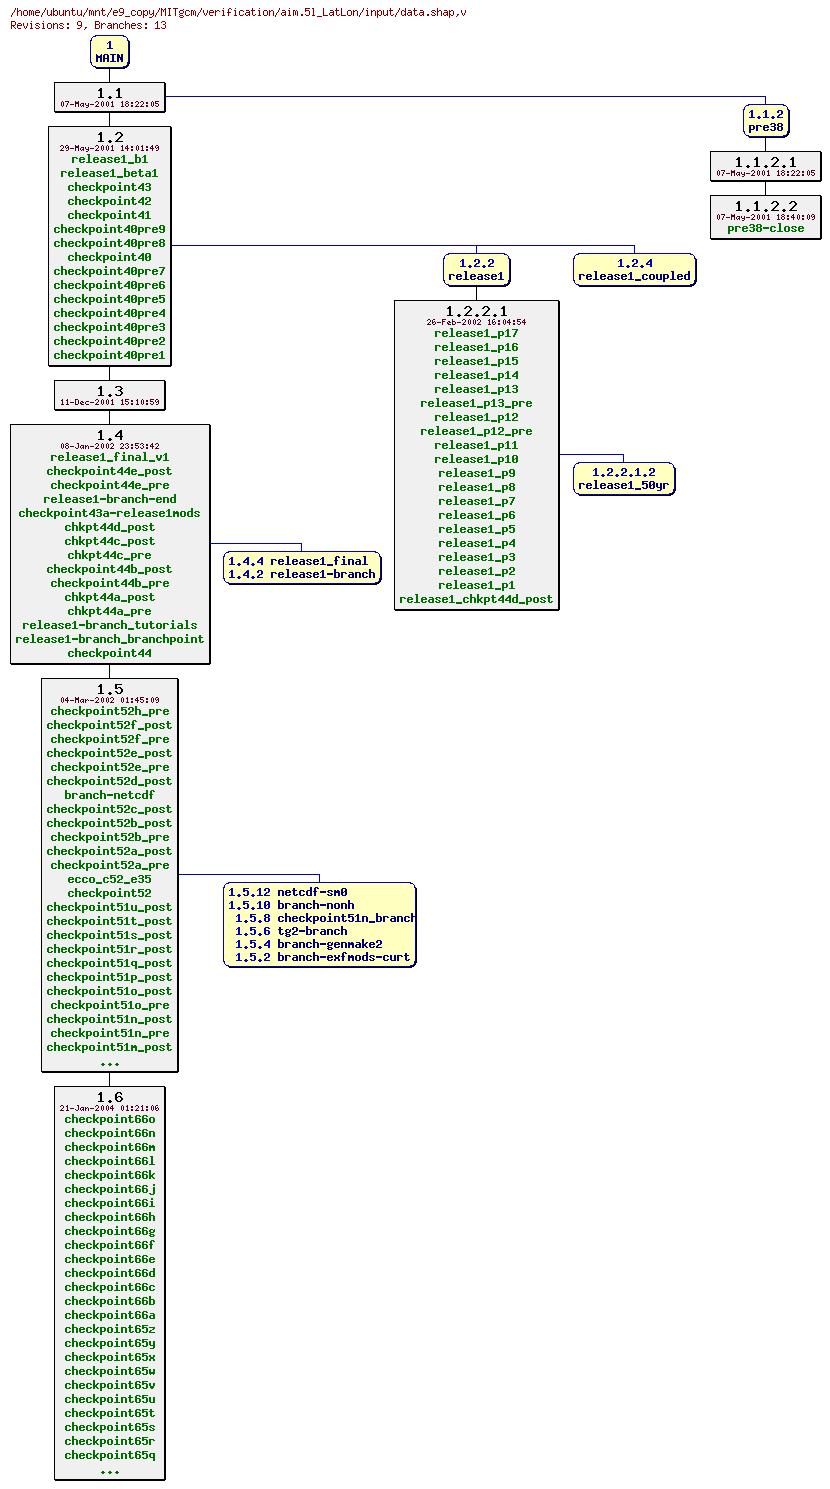 Revisions of MITgcm/verification/aim.5l_LatLon/input/data.shap